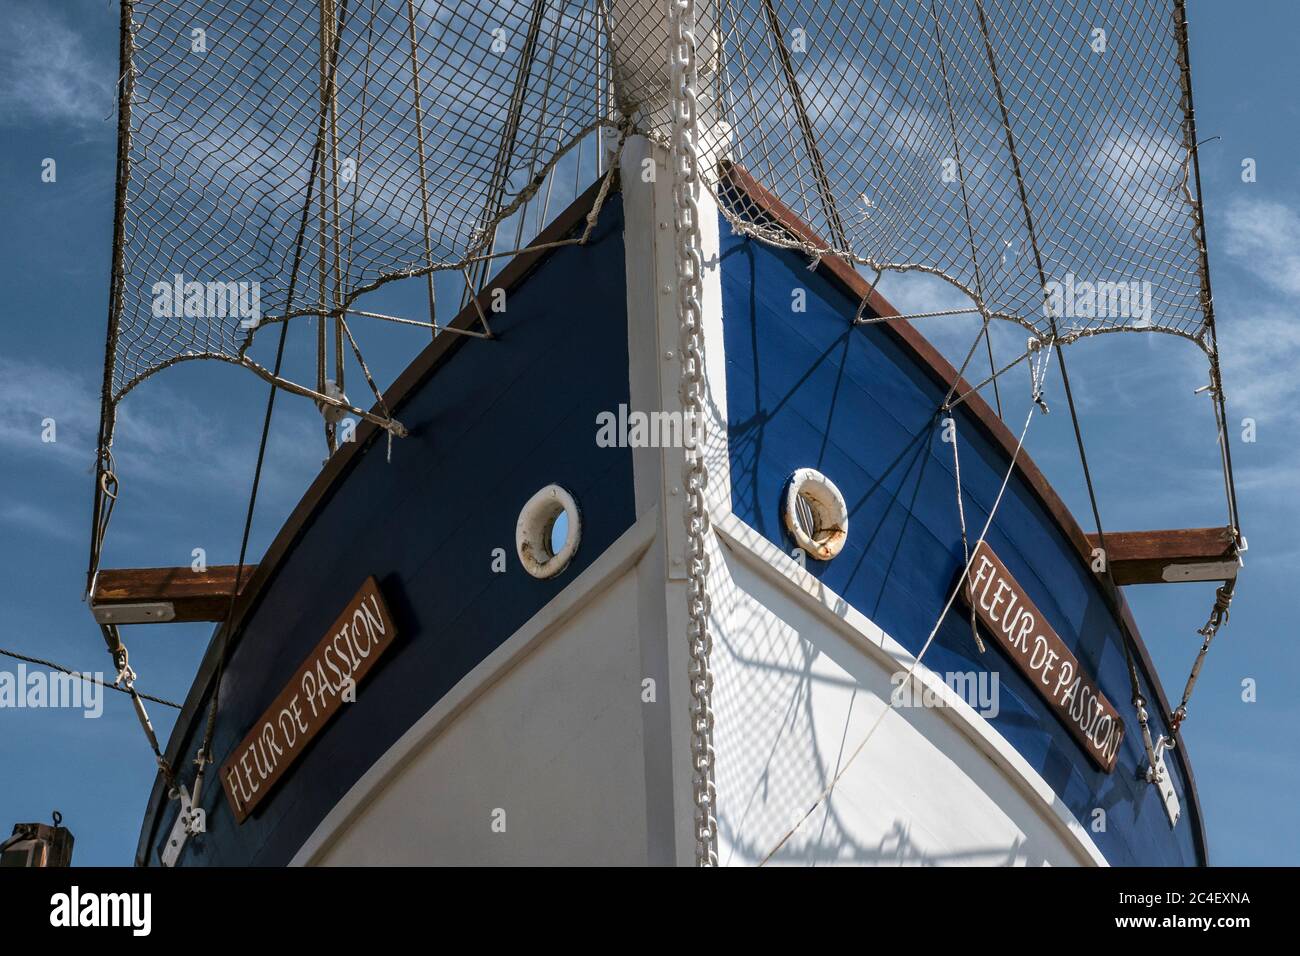 Camaret Mise à l'eau de 'Fleur de passion' sailboat, Passion flower, Launching Stock Photo